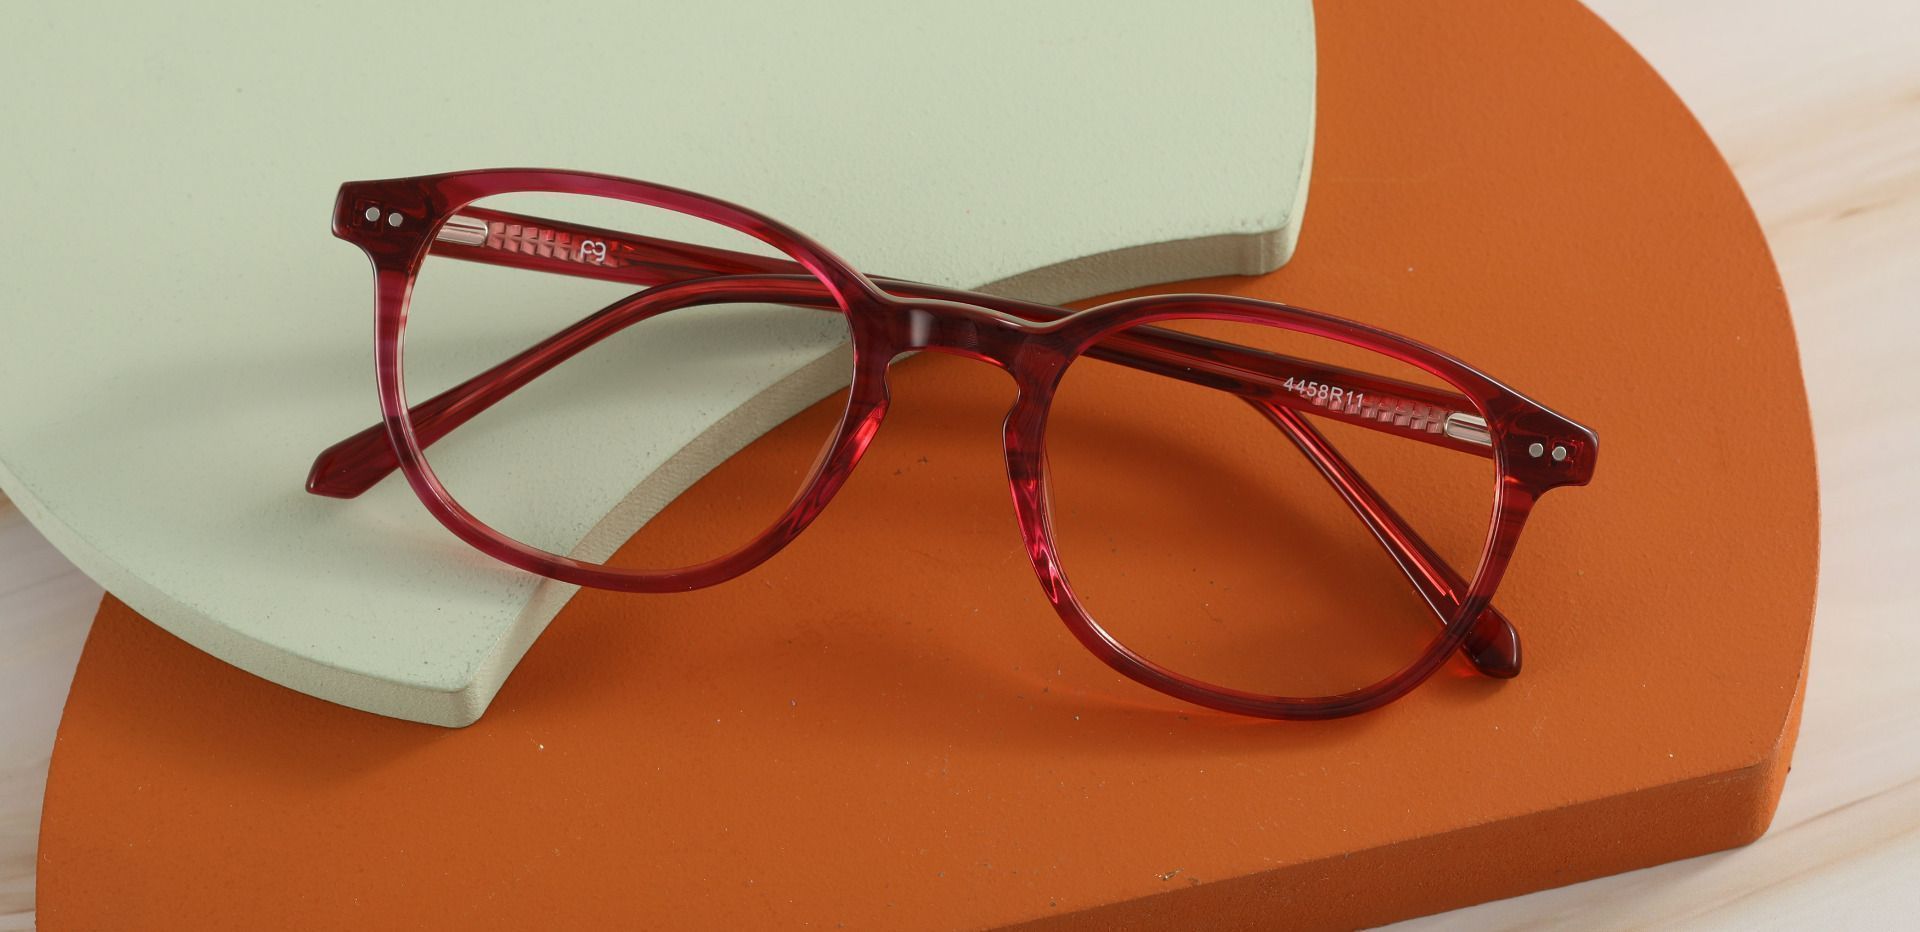 Arabella Oval Prescription Glasses - Red